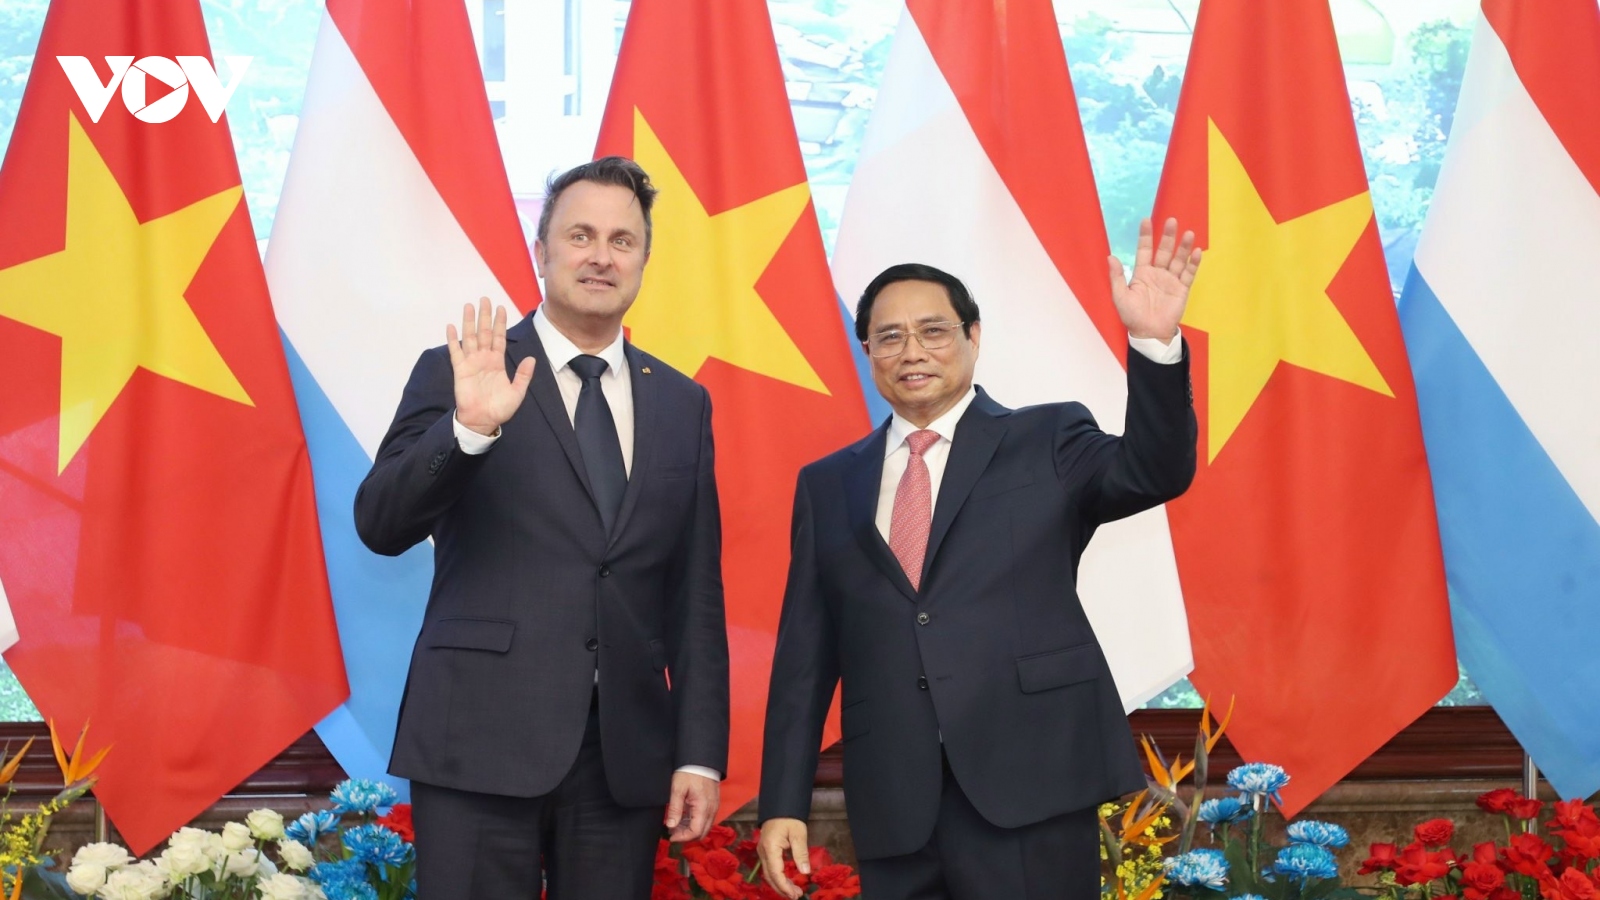 Toàn cảnh lễ đón và hội đàm giữa Thủ tướng Việt Nam và Thủ tướng Luxembourg